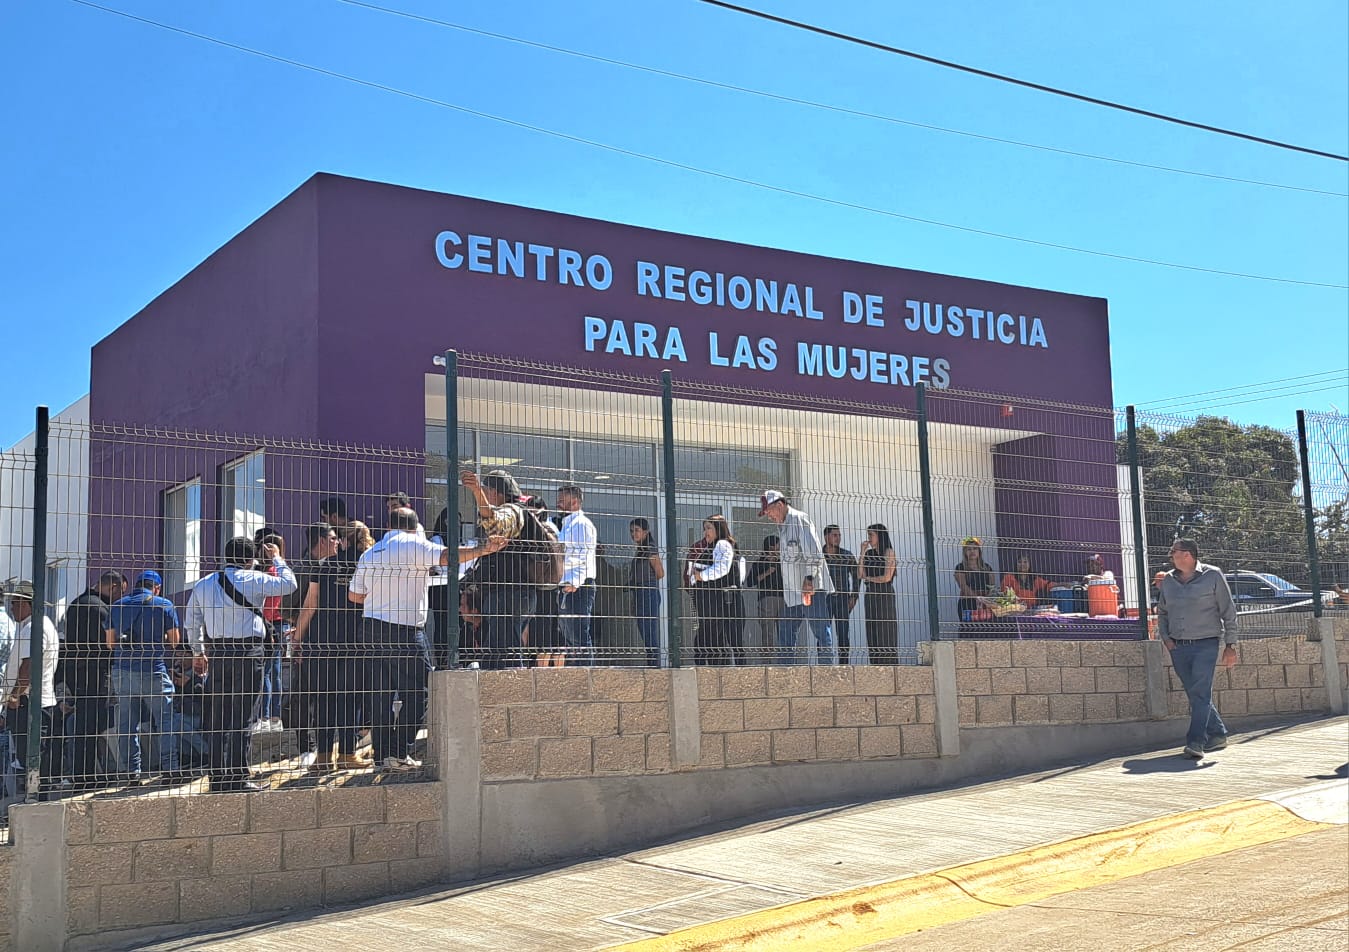 Centro Regional de Justicia para las Mujeres Mazatlán